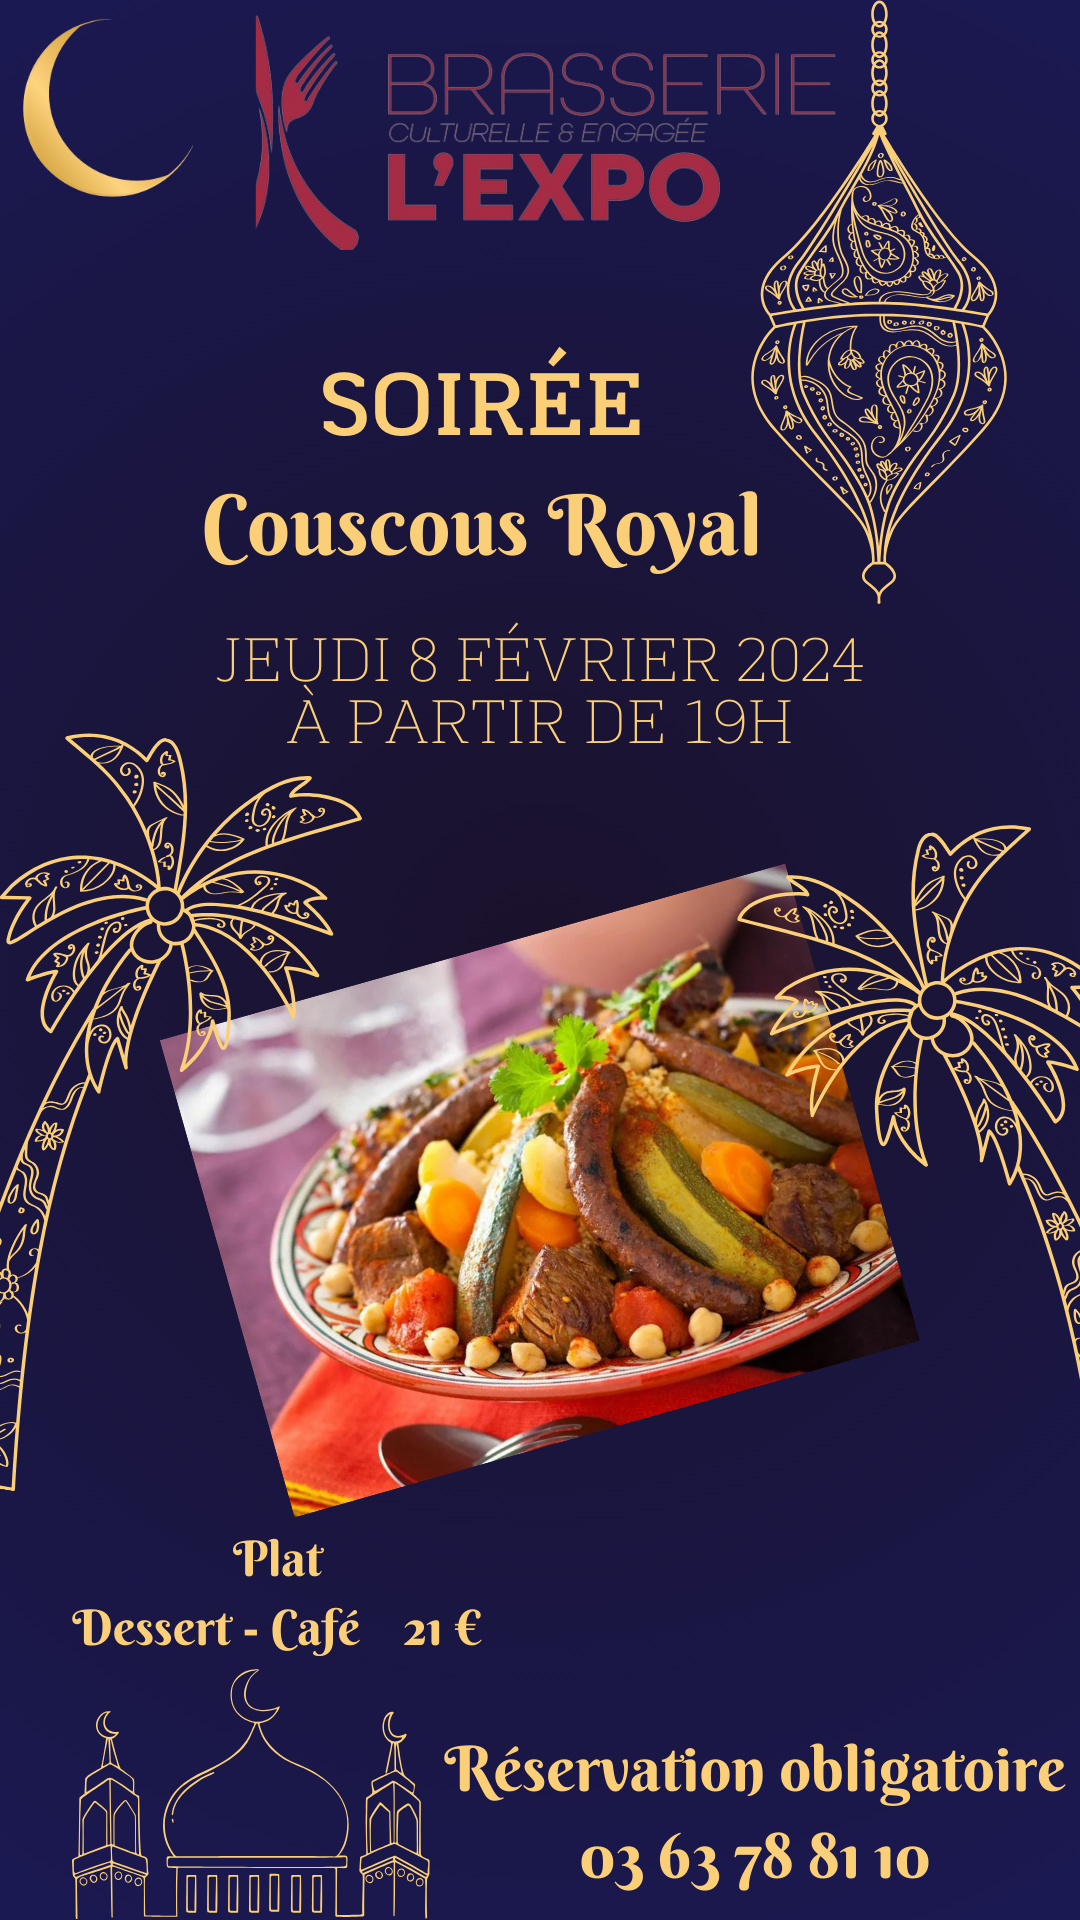 Soirée Couscous Royal, jeudi 8 février 2024